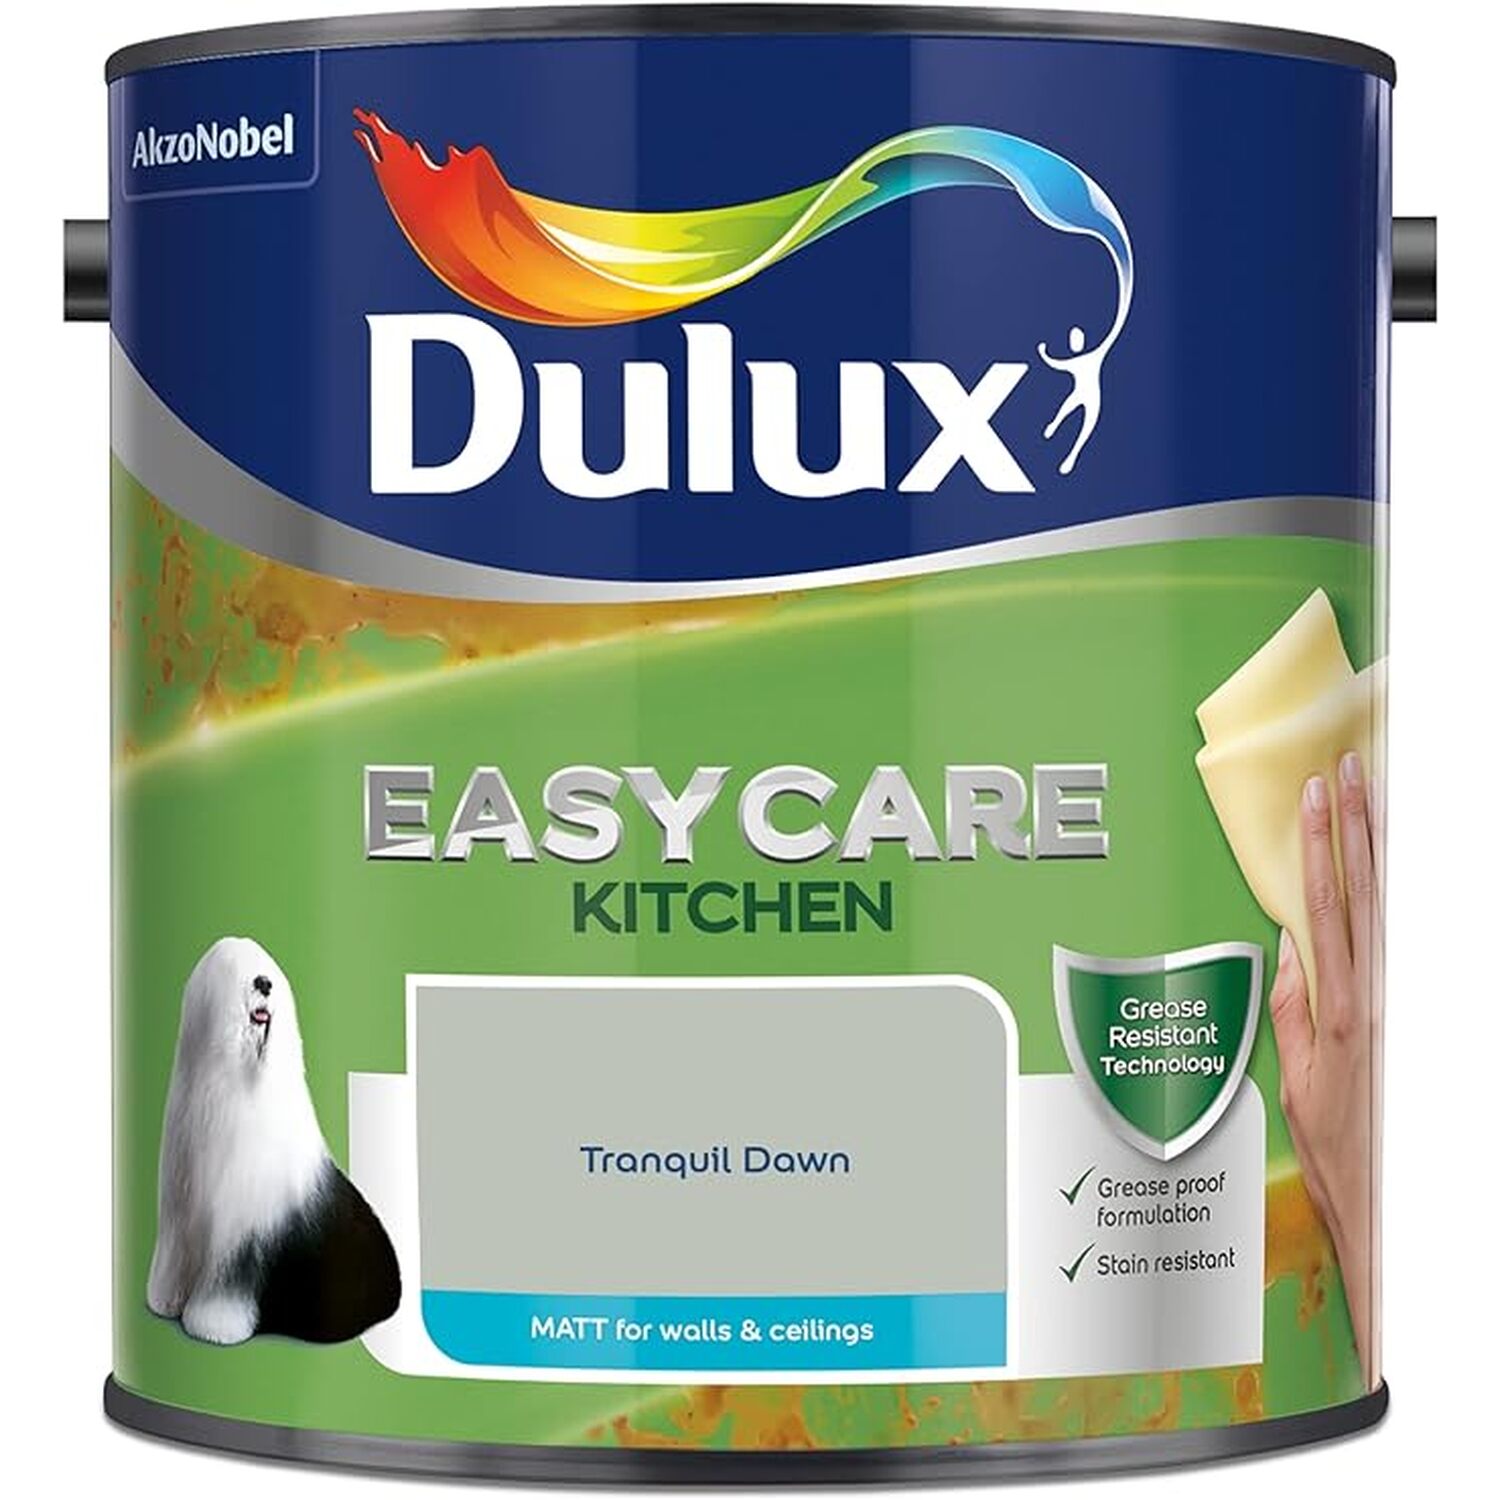 Dulux Easycare Kitchen Tranquil Dawn Matt Emulsion Paint 2.5L Image 2